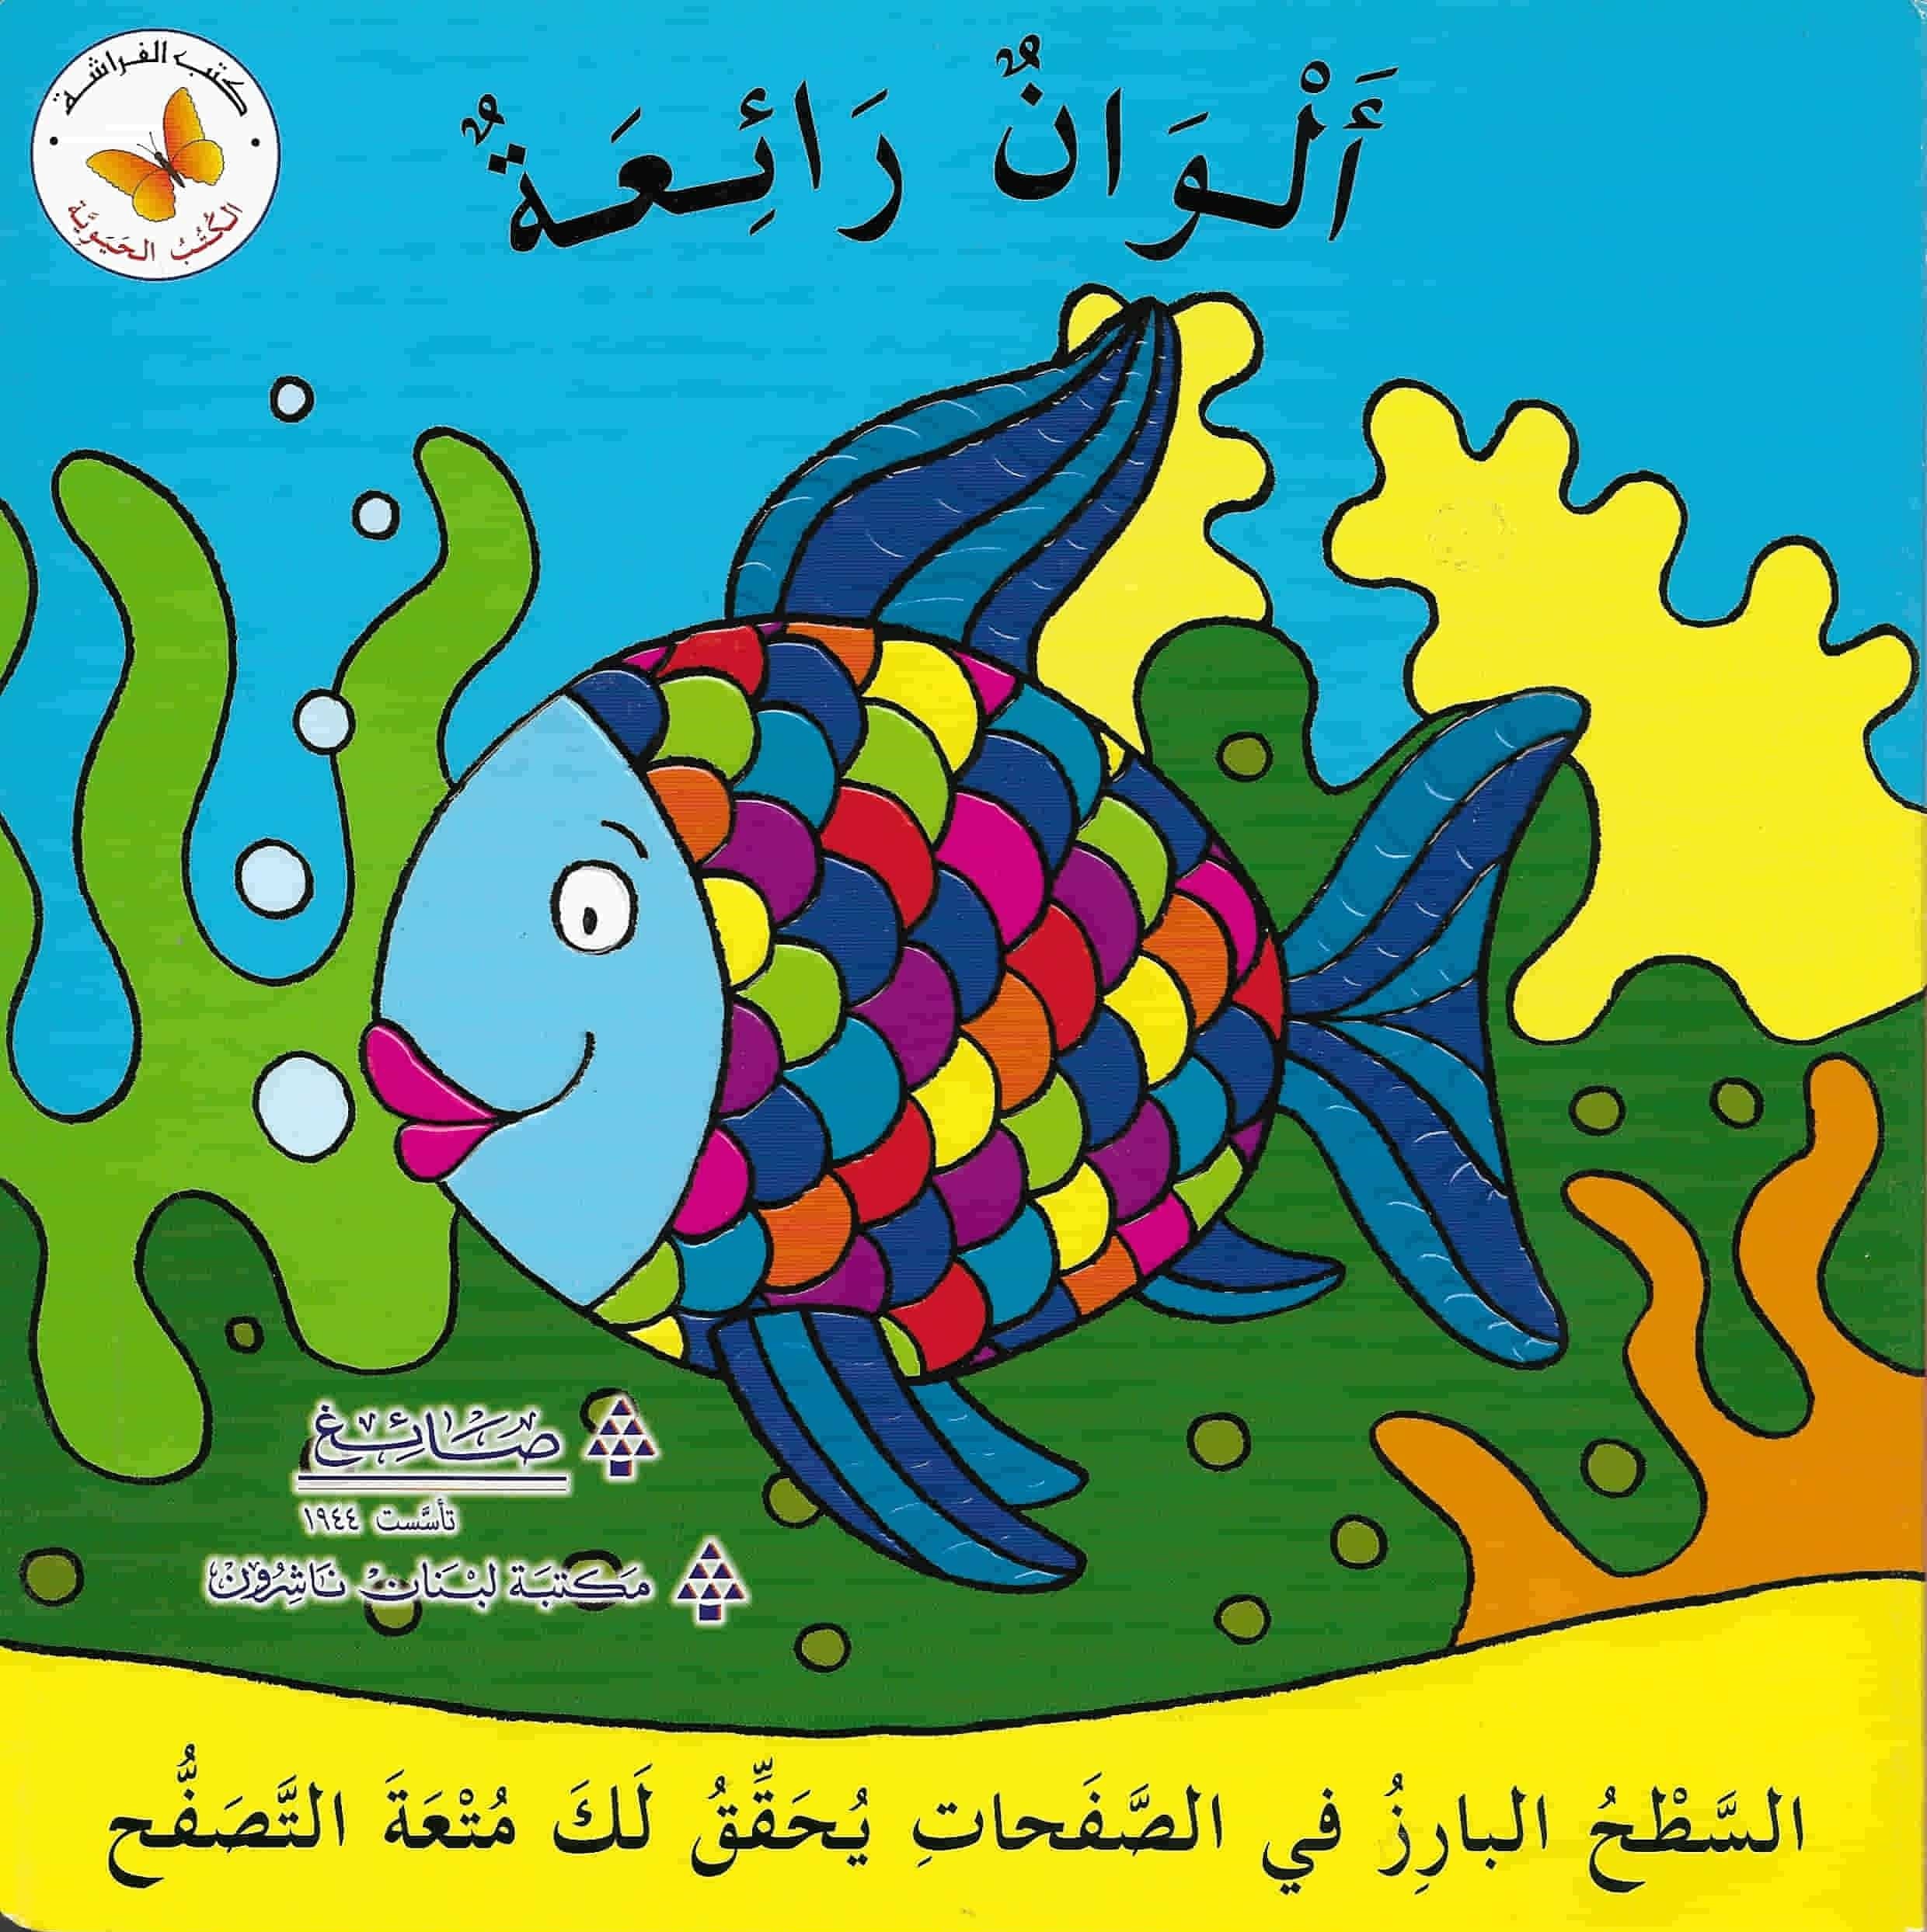 سلسلة الكتب الحيوية كتب أطفال مكتبة لبنان ناشرون ألوان رائعة